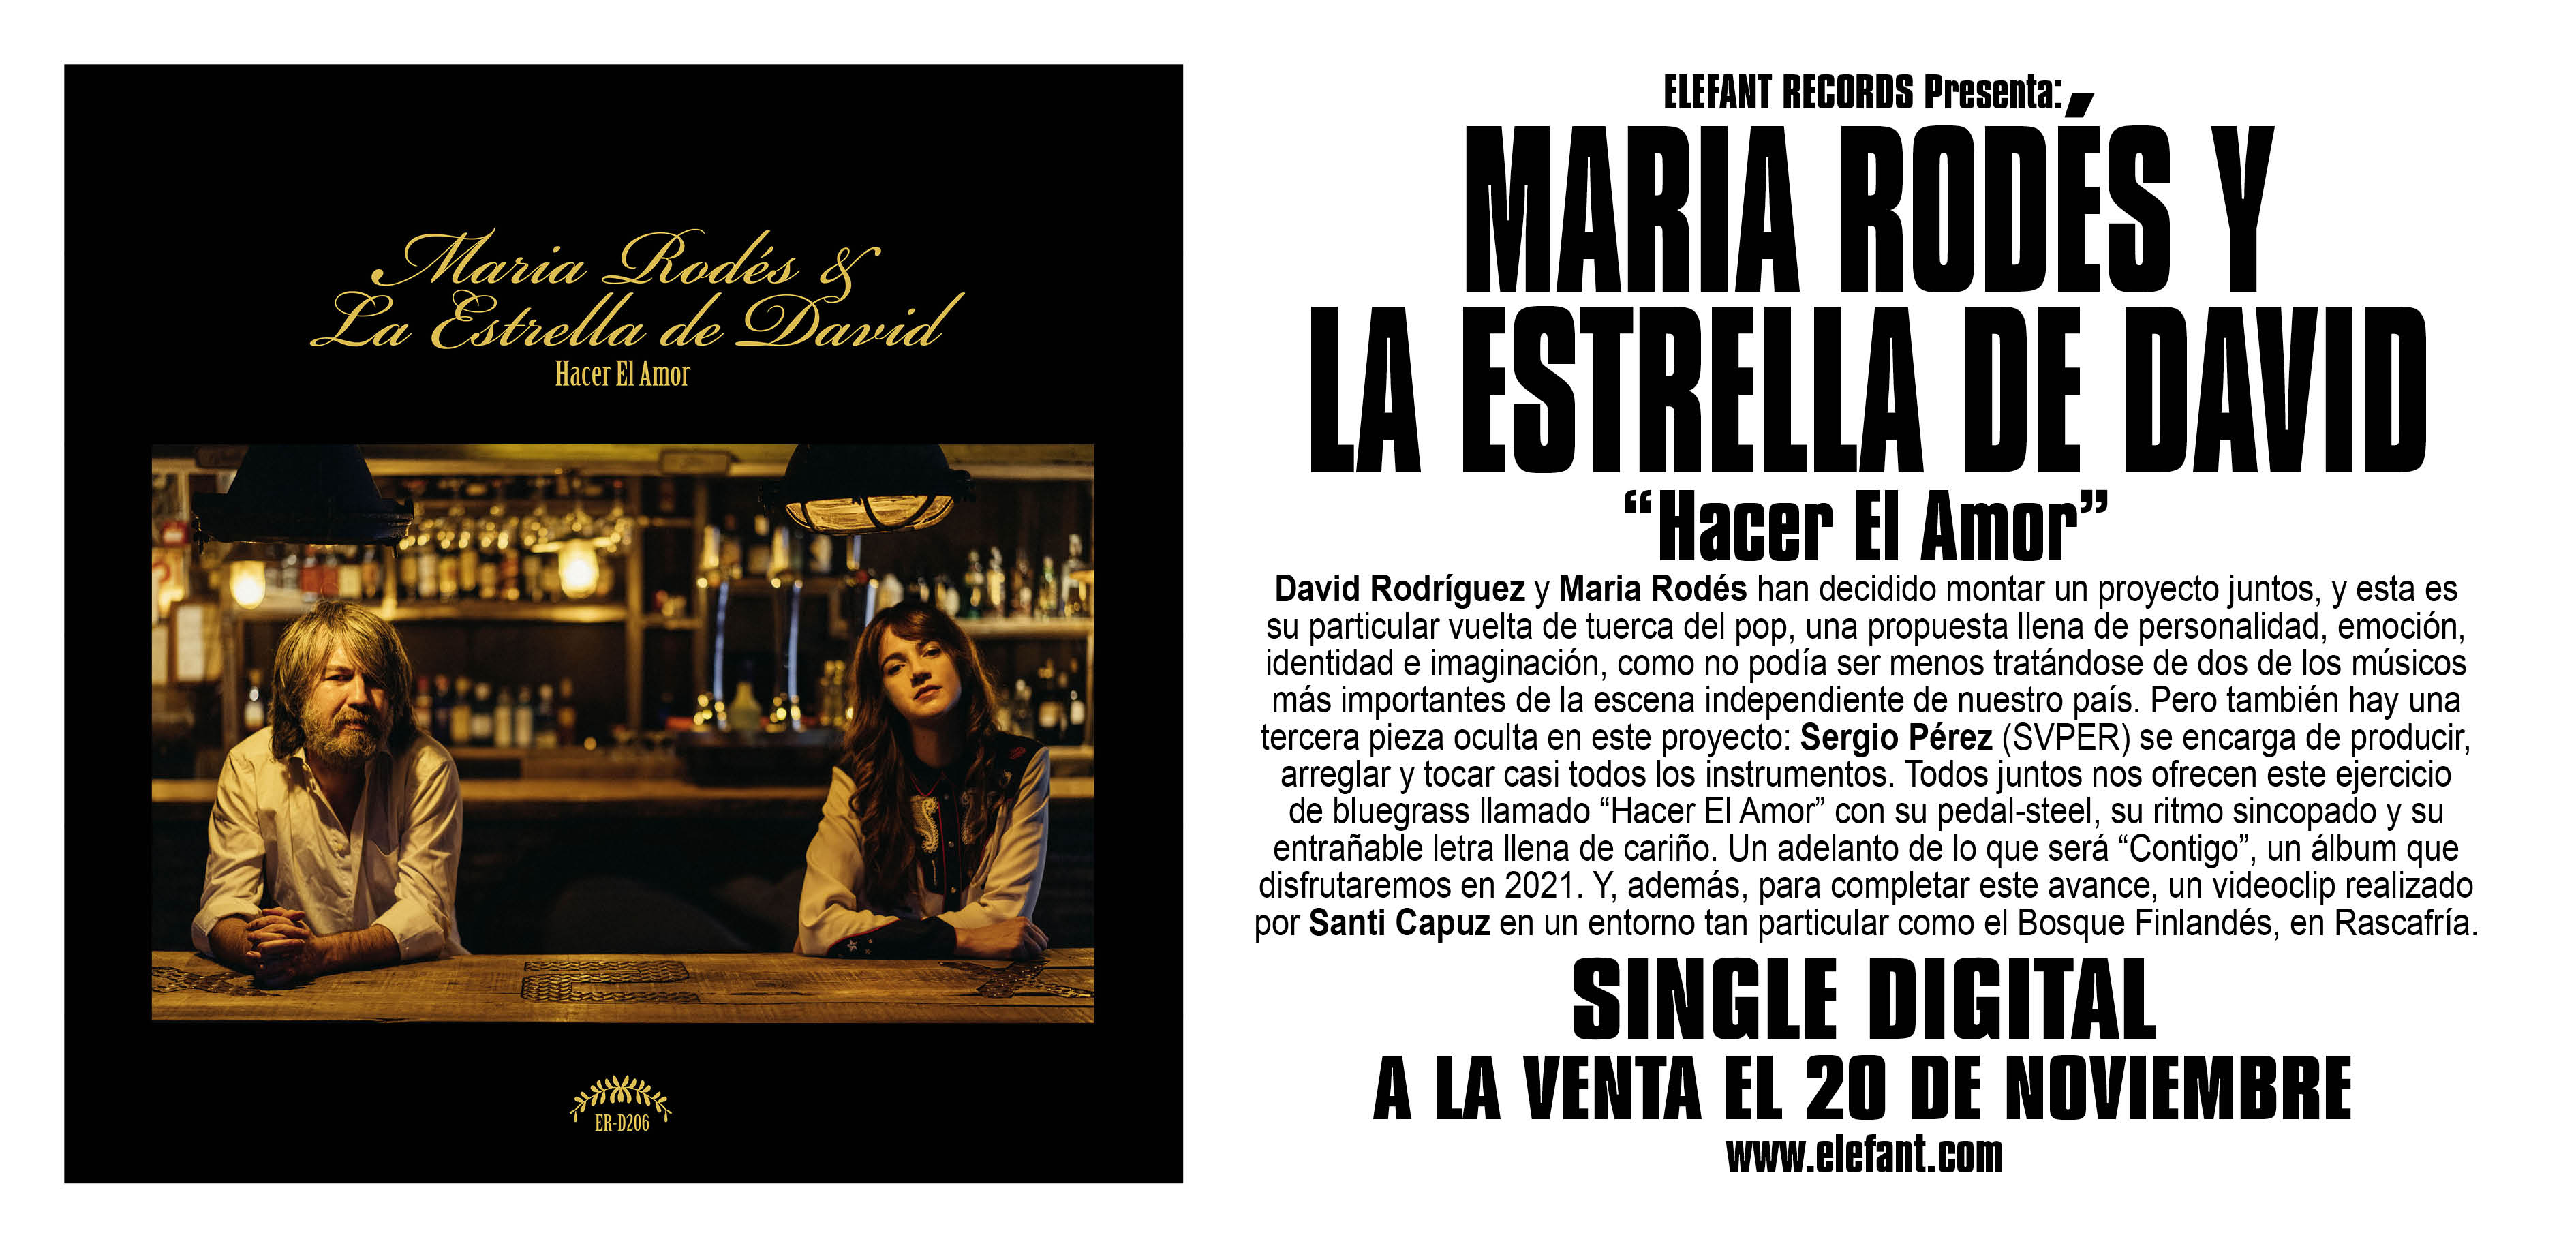 Maria Rodés Y La Estrella De David "Hacer El Amor" Single Digital